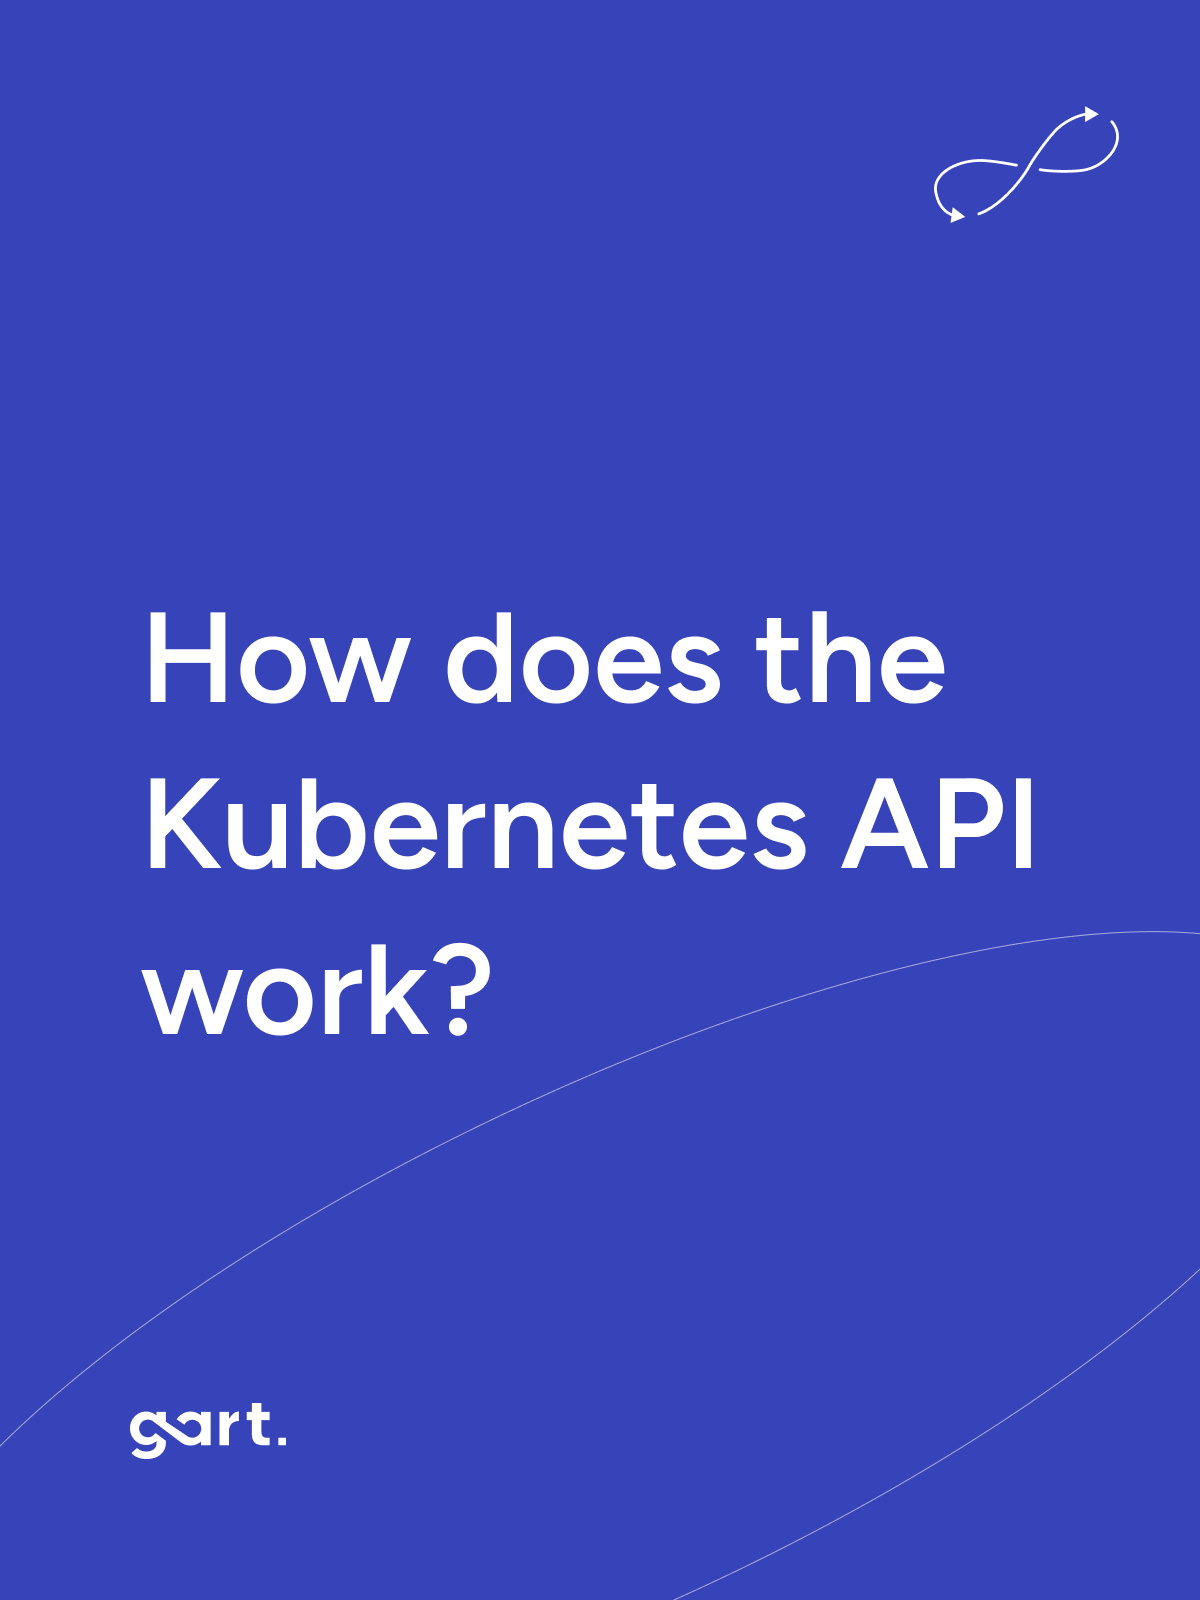 How Does the Kubernetes API Work? Demystifying the Inner Workings of the Kubernetes API